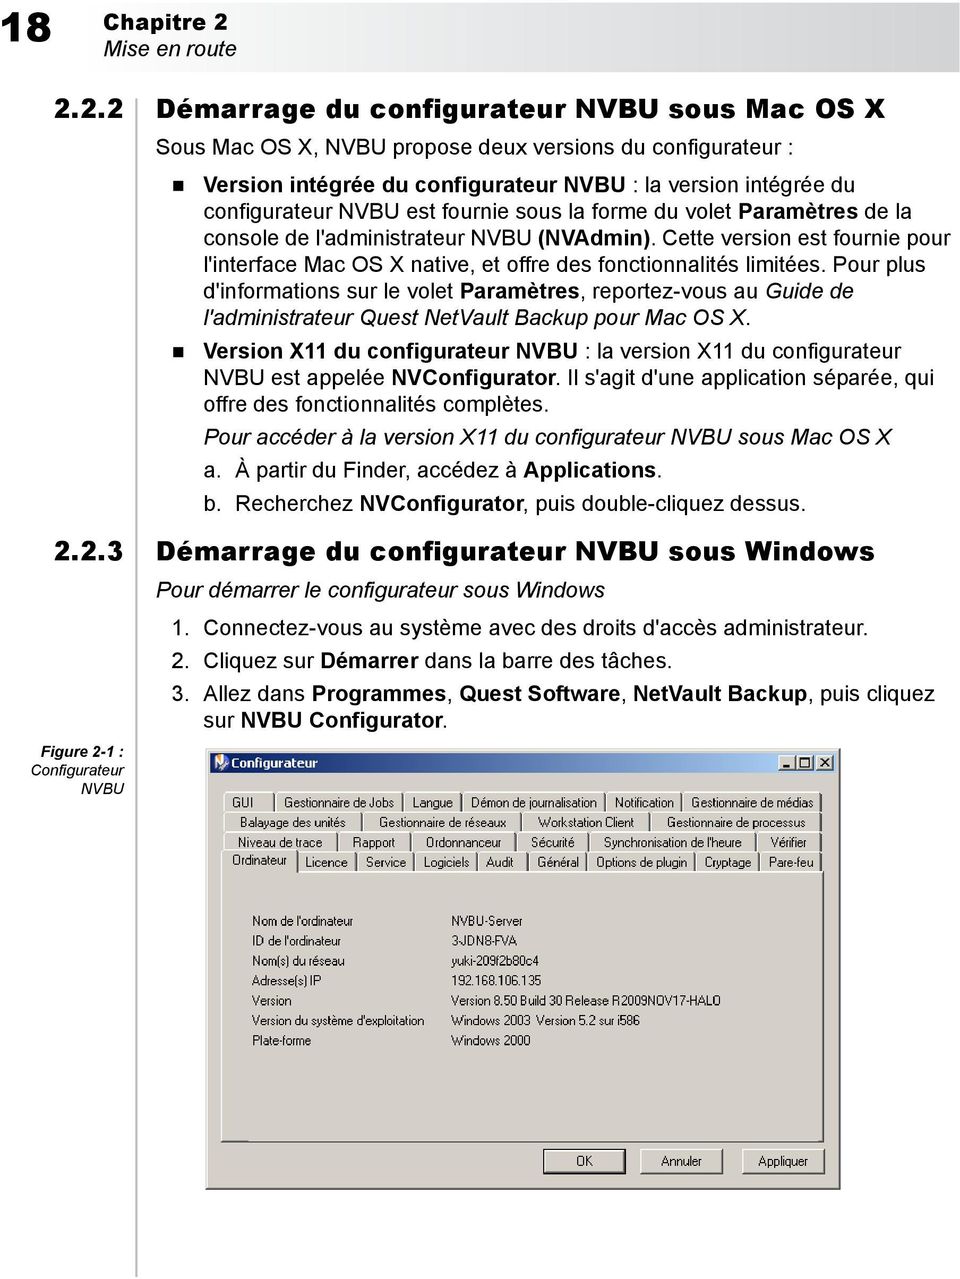 2.2 Démarrage du configurateur NVBU sous Mac OS X Sous Mac OS X, NVBU propose deux versions du configurateur : Version intégrée du configurateur NVBU : la version intégrée du configurateur NVBU est